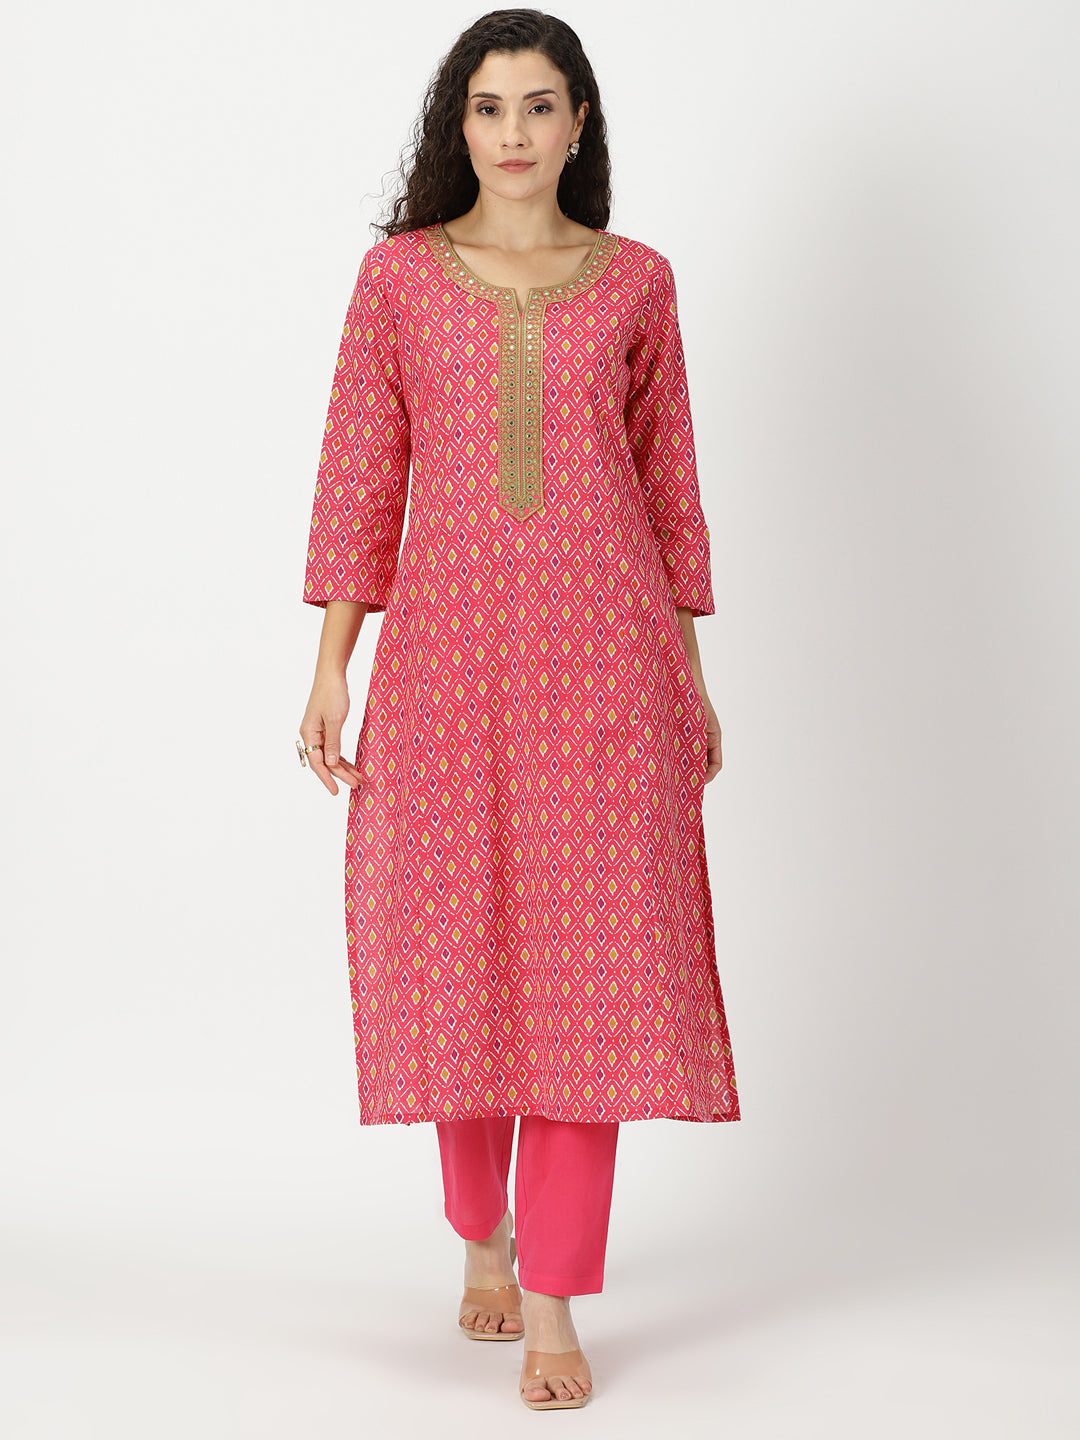 Cotton Dress Material Neck Designs - SareesWala.com